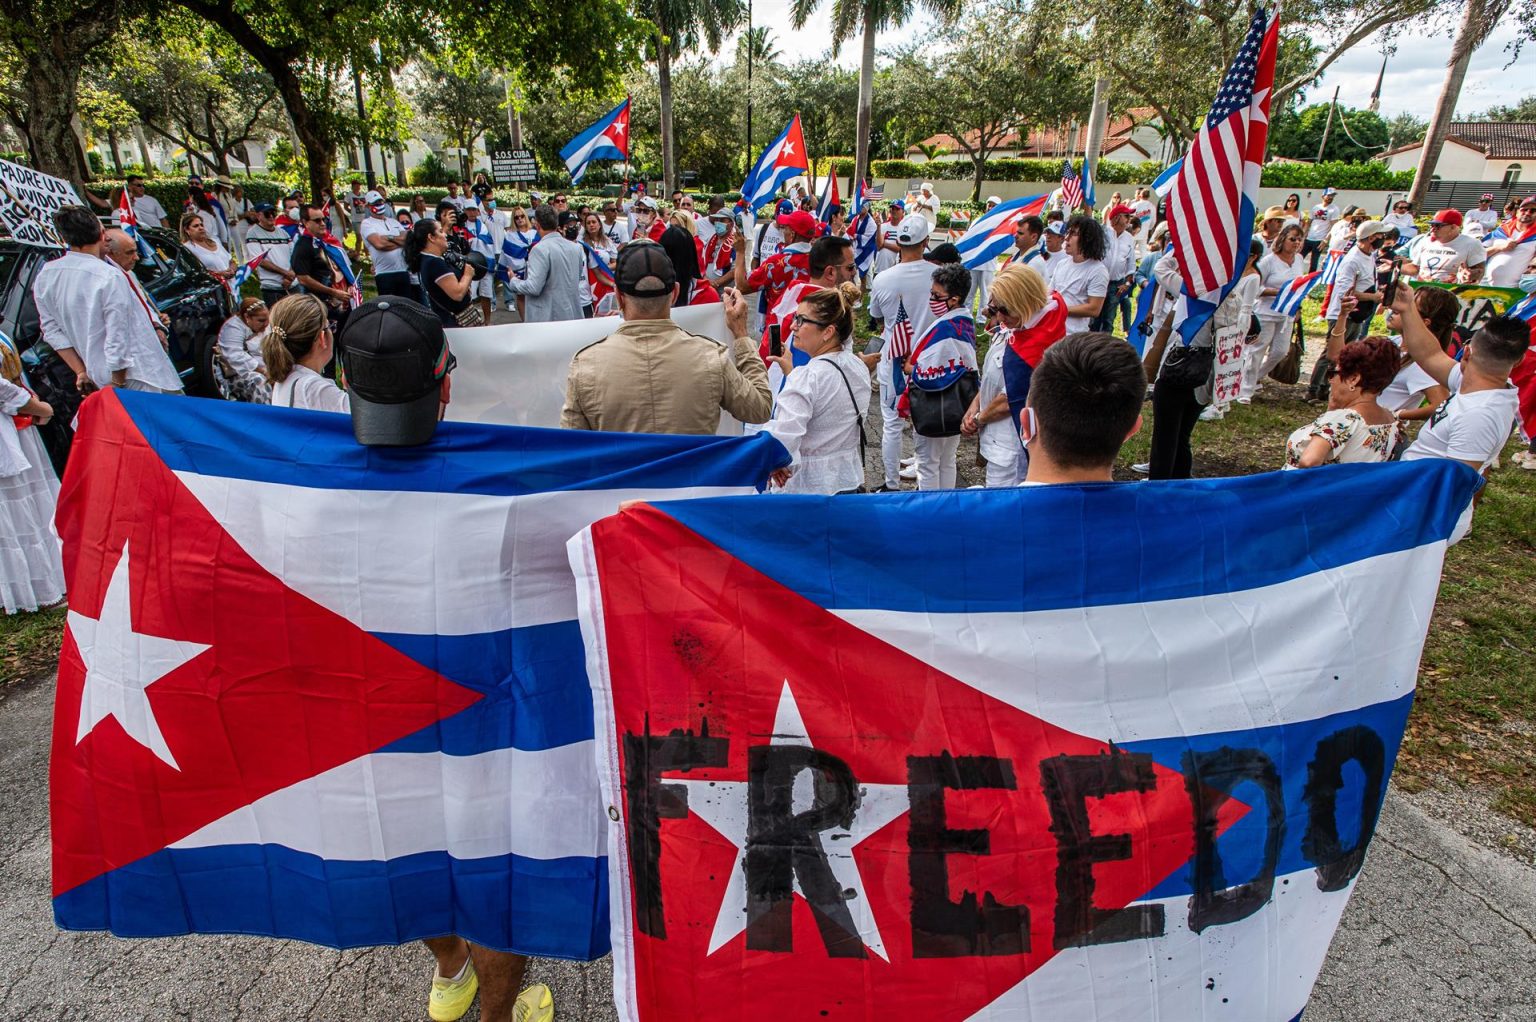 Decenas de cubanos durante una manifestación en Miami, Florida (EE.UU). Imagen de archivo. EFE/ Giorgio Viera